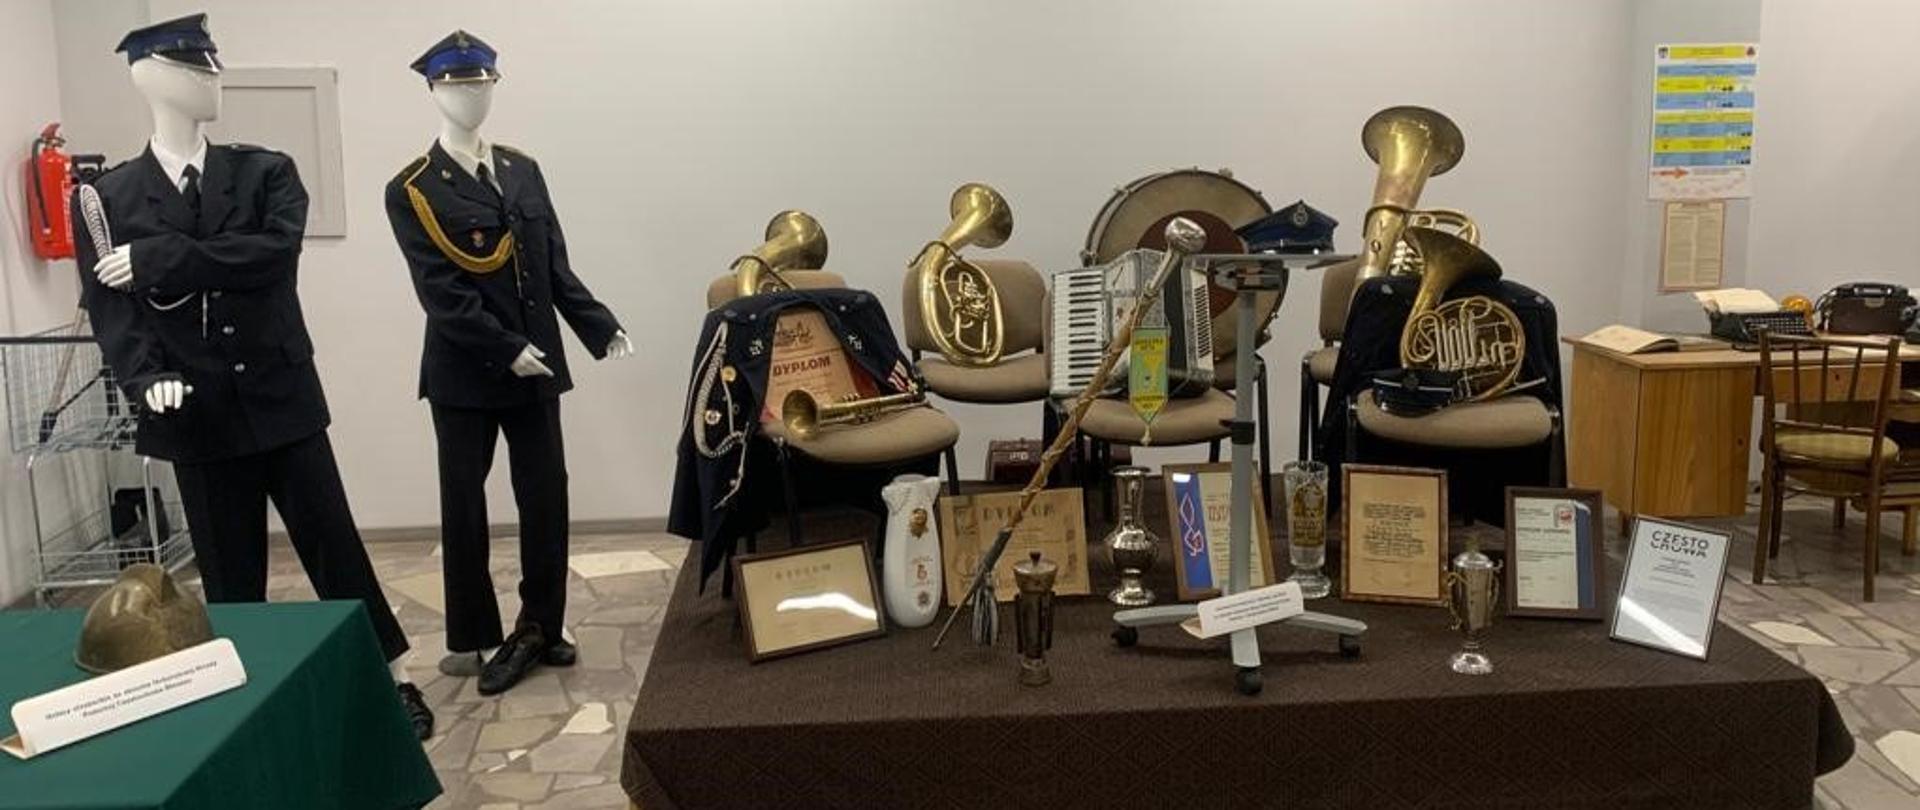 Podest a na nim eksponaty m.in. instrumenty orkiestry strażackiej, buława dyrygencka, dyplomy oraz puchary. Z boku, po lewej, manekiny w mundurach galowych PSP oraz OSP